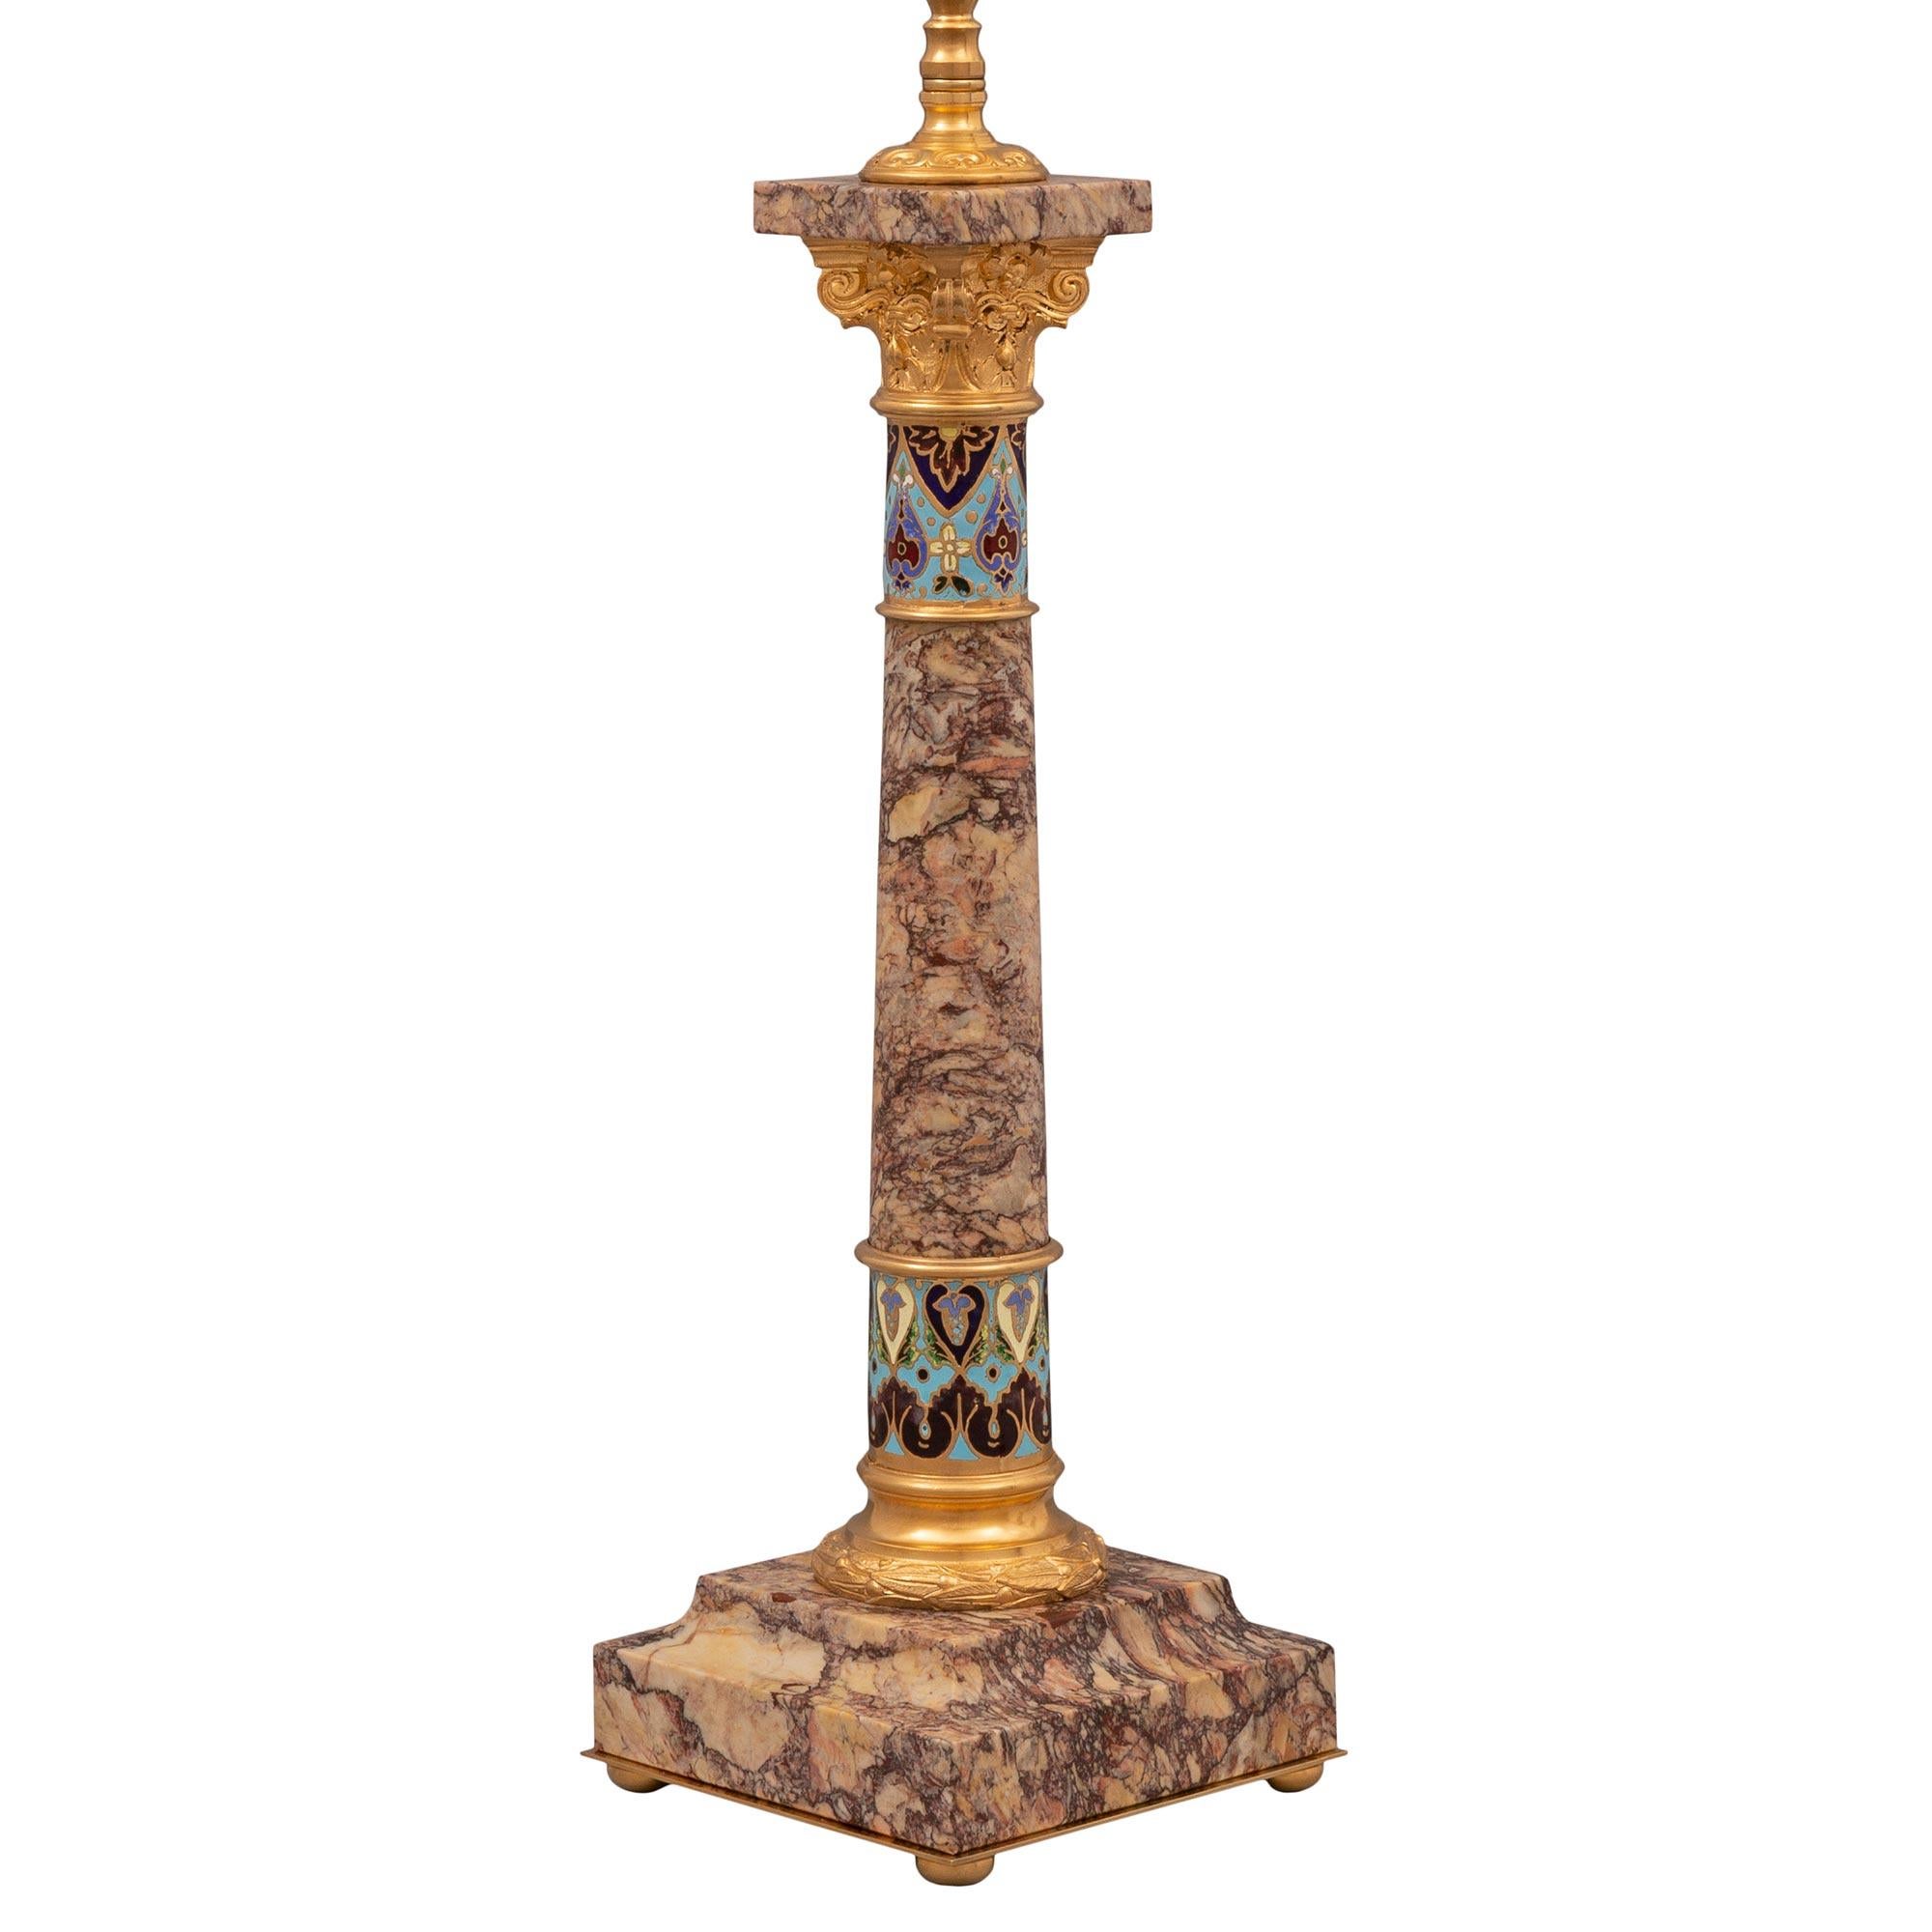 Paire de lampes de style Louis XVI du 19ème siècle en marbre Brocatelle Violette, bronze doré et cloisonné. Chaque lampe est surélevée par une base rectangulaire avec une élégante bordure mouchetée incurvée, de fins pieds boule en bronze doré et un